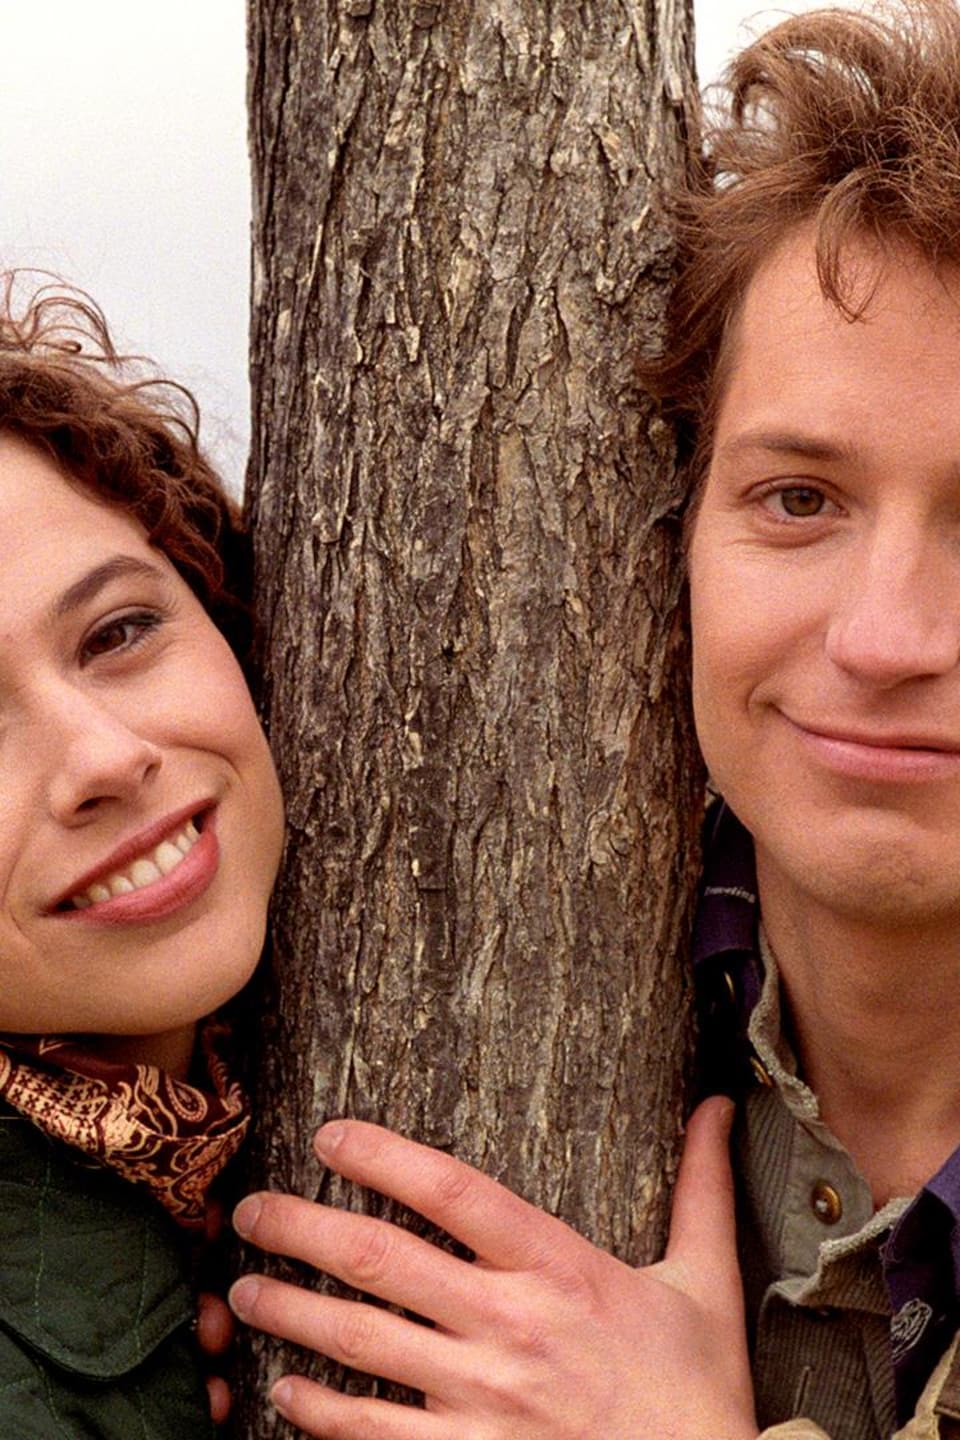 À l'extérieur, Isabelle Dupré (Isabelle Brossard) et Louis Martineau (Robert Brouillette) sont debout à côté d'un arbre, leurs visages s'appuyant sur celui-ci.